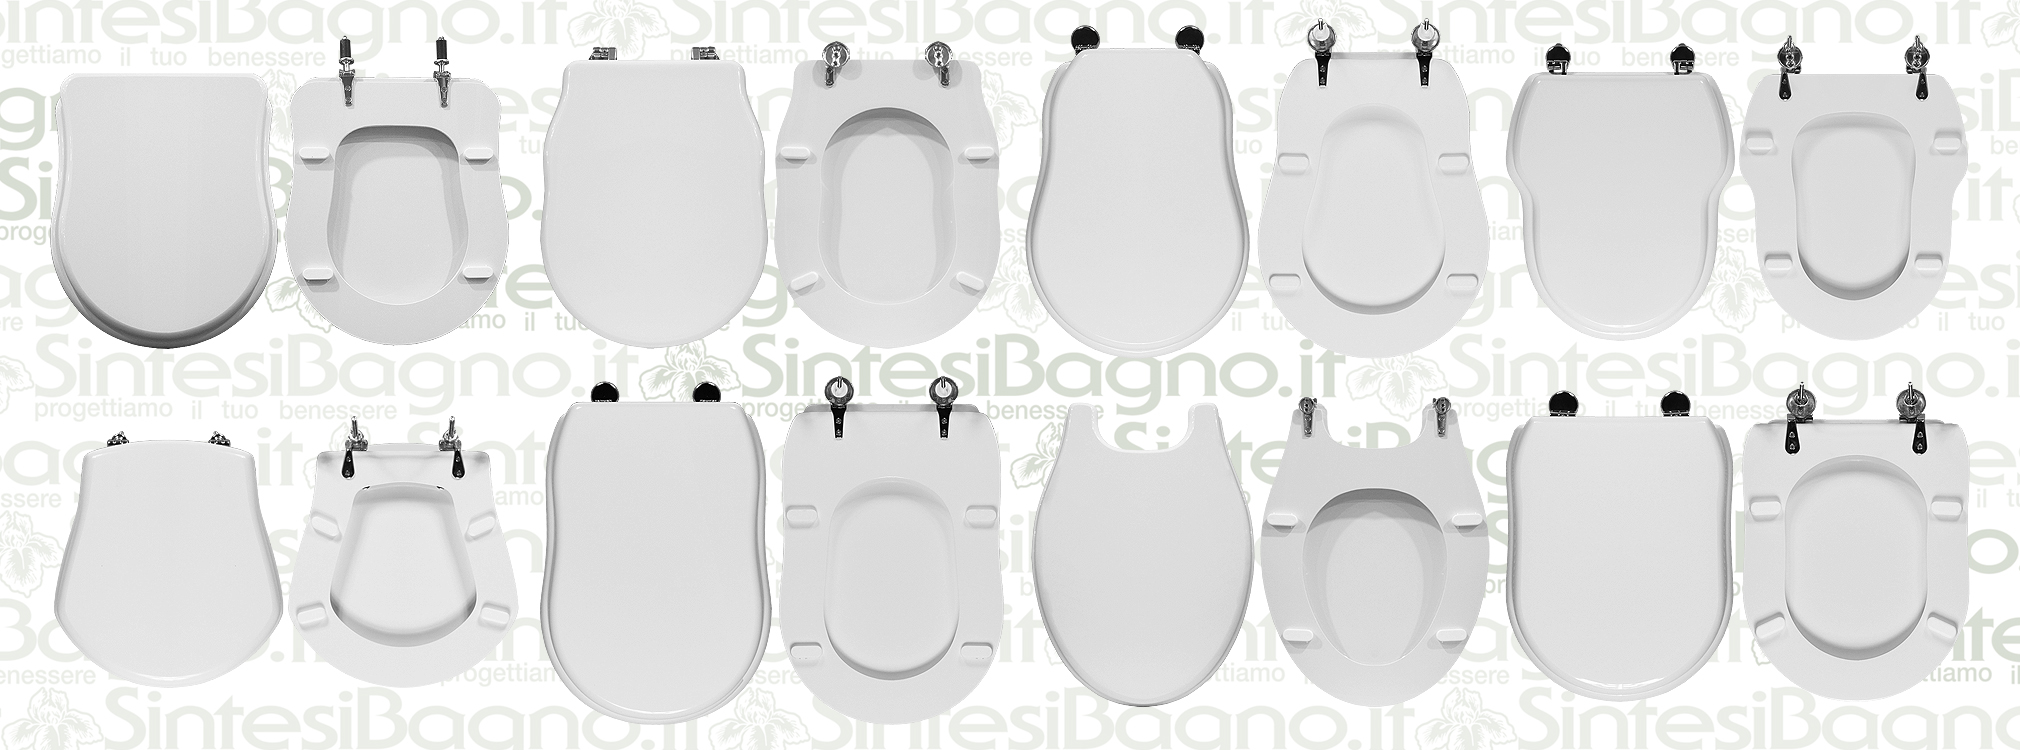 Georges sedile per WC con discesa automatica in diversi design 